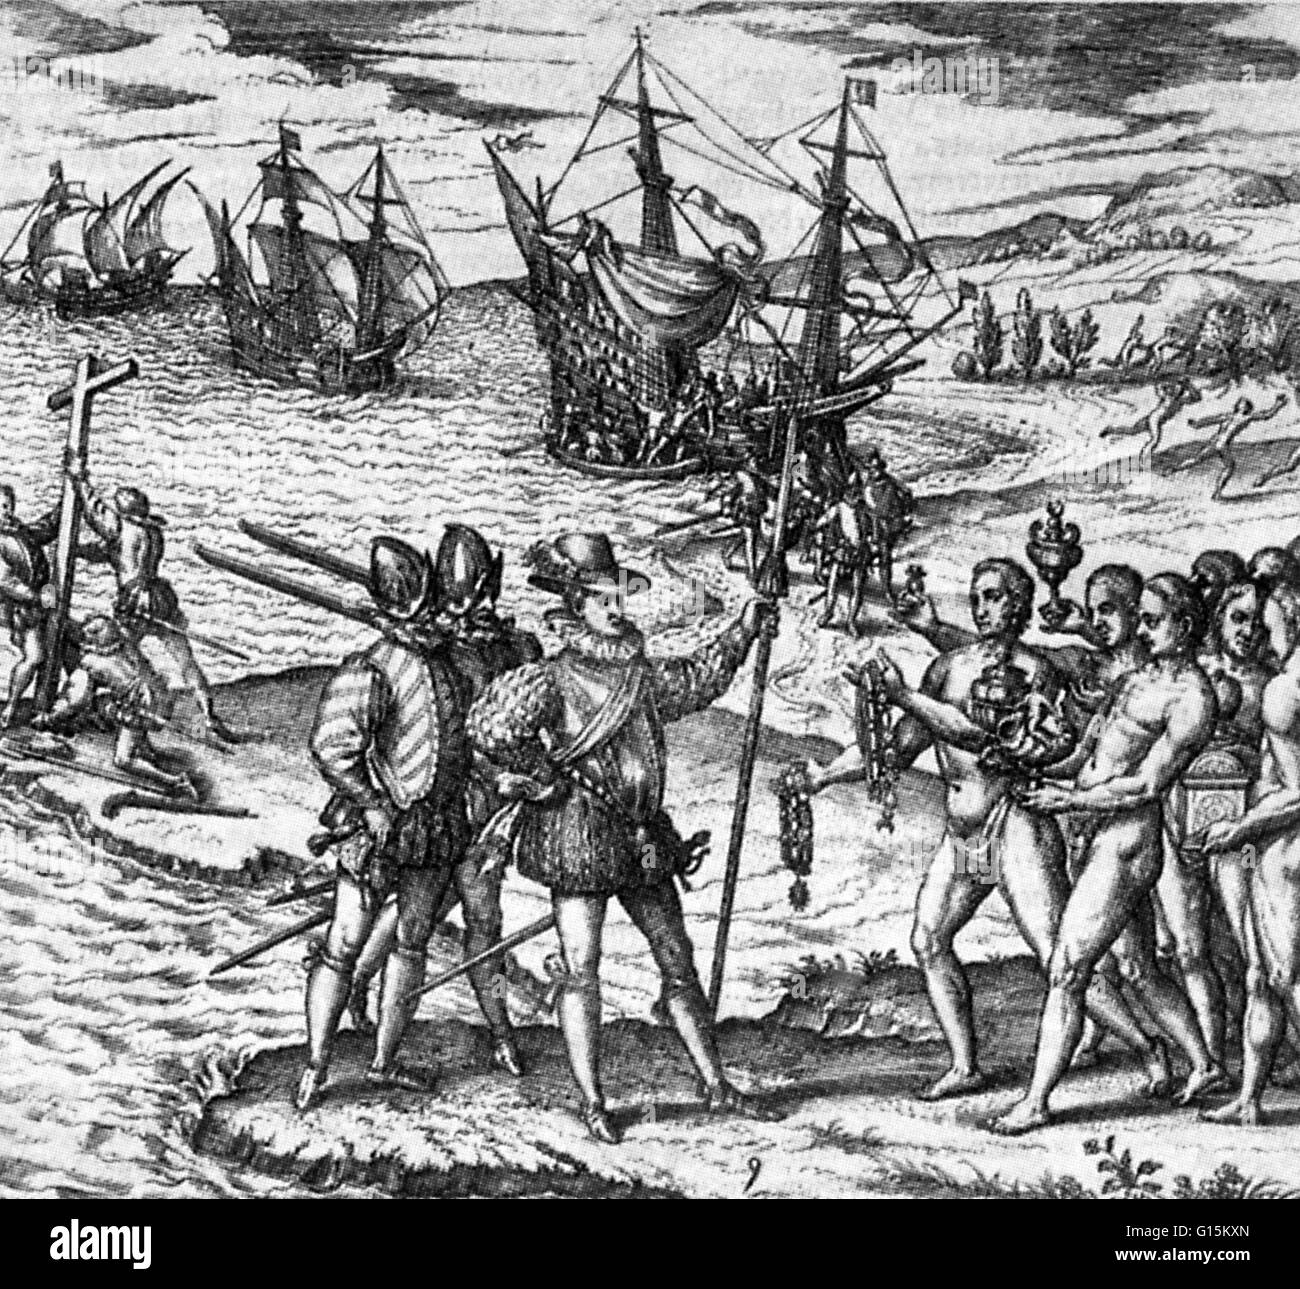 Columbus erhält Geschenke von Eingeborenen aus Gold gemacht, als er im Dezember 1492 in Hispaniola eintrifft. Nach seiner Rückkehr nach Spanien präsentierte er die Geschenke an den Hof in Barcelona im Jahre 1493. Stockfoto